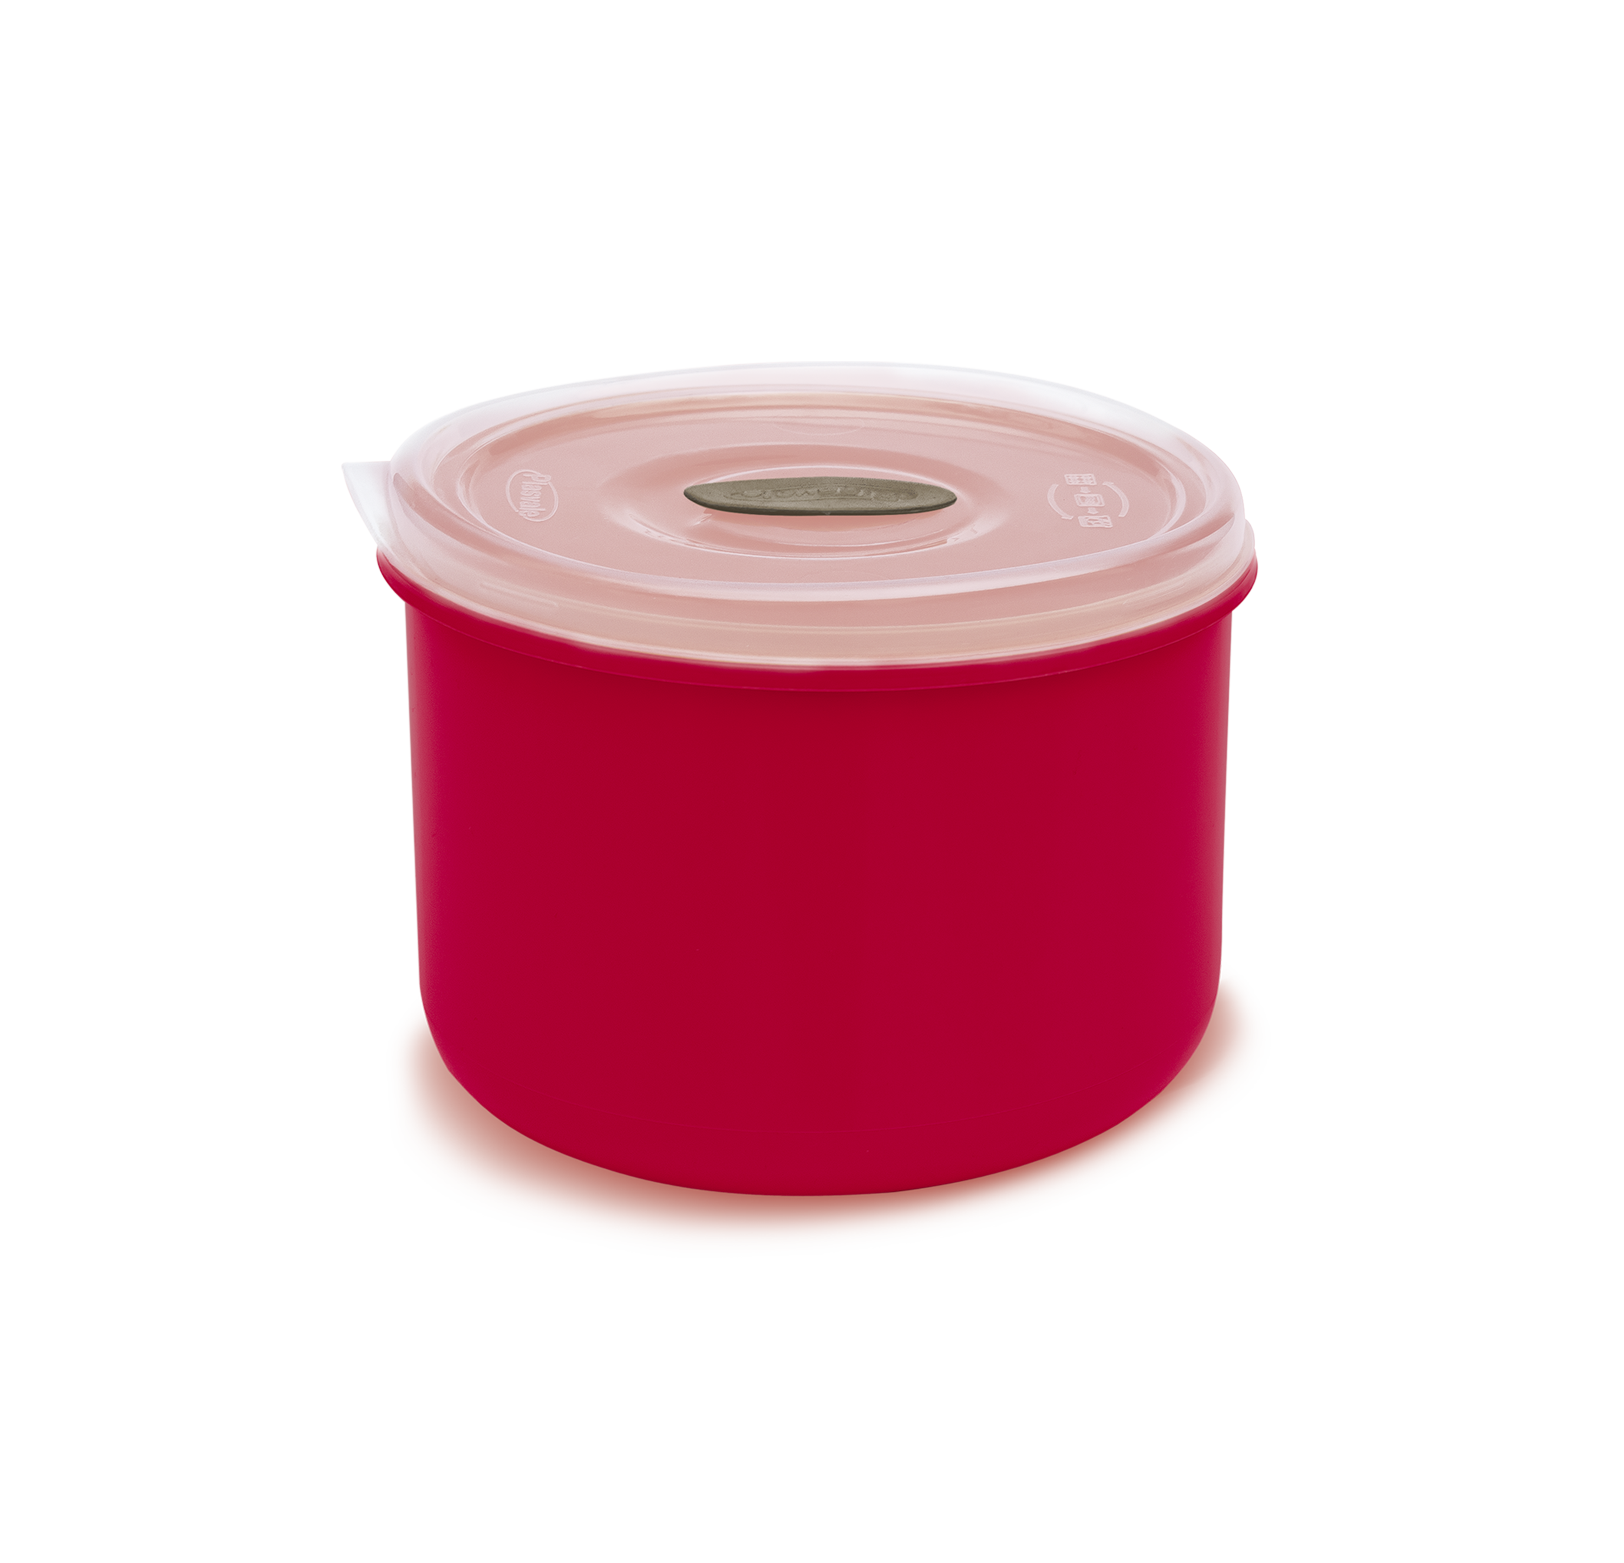 Imagem do produto: Pote Redondo 0,6L 3629 - Vermelho Jester